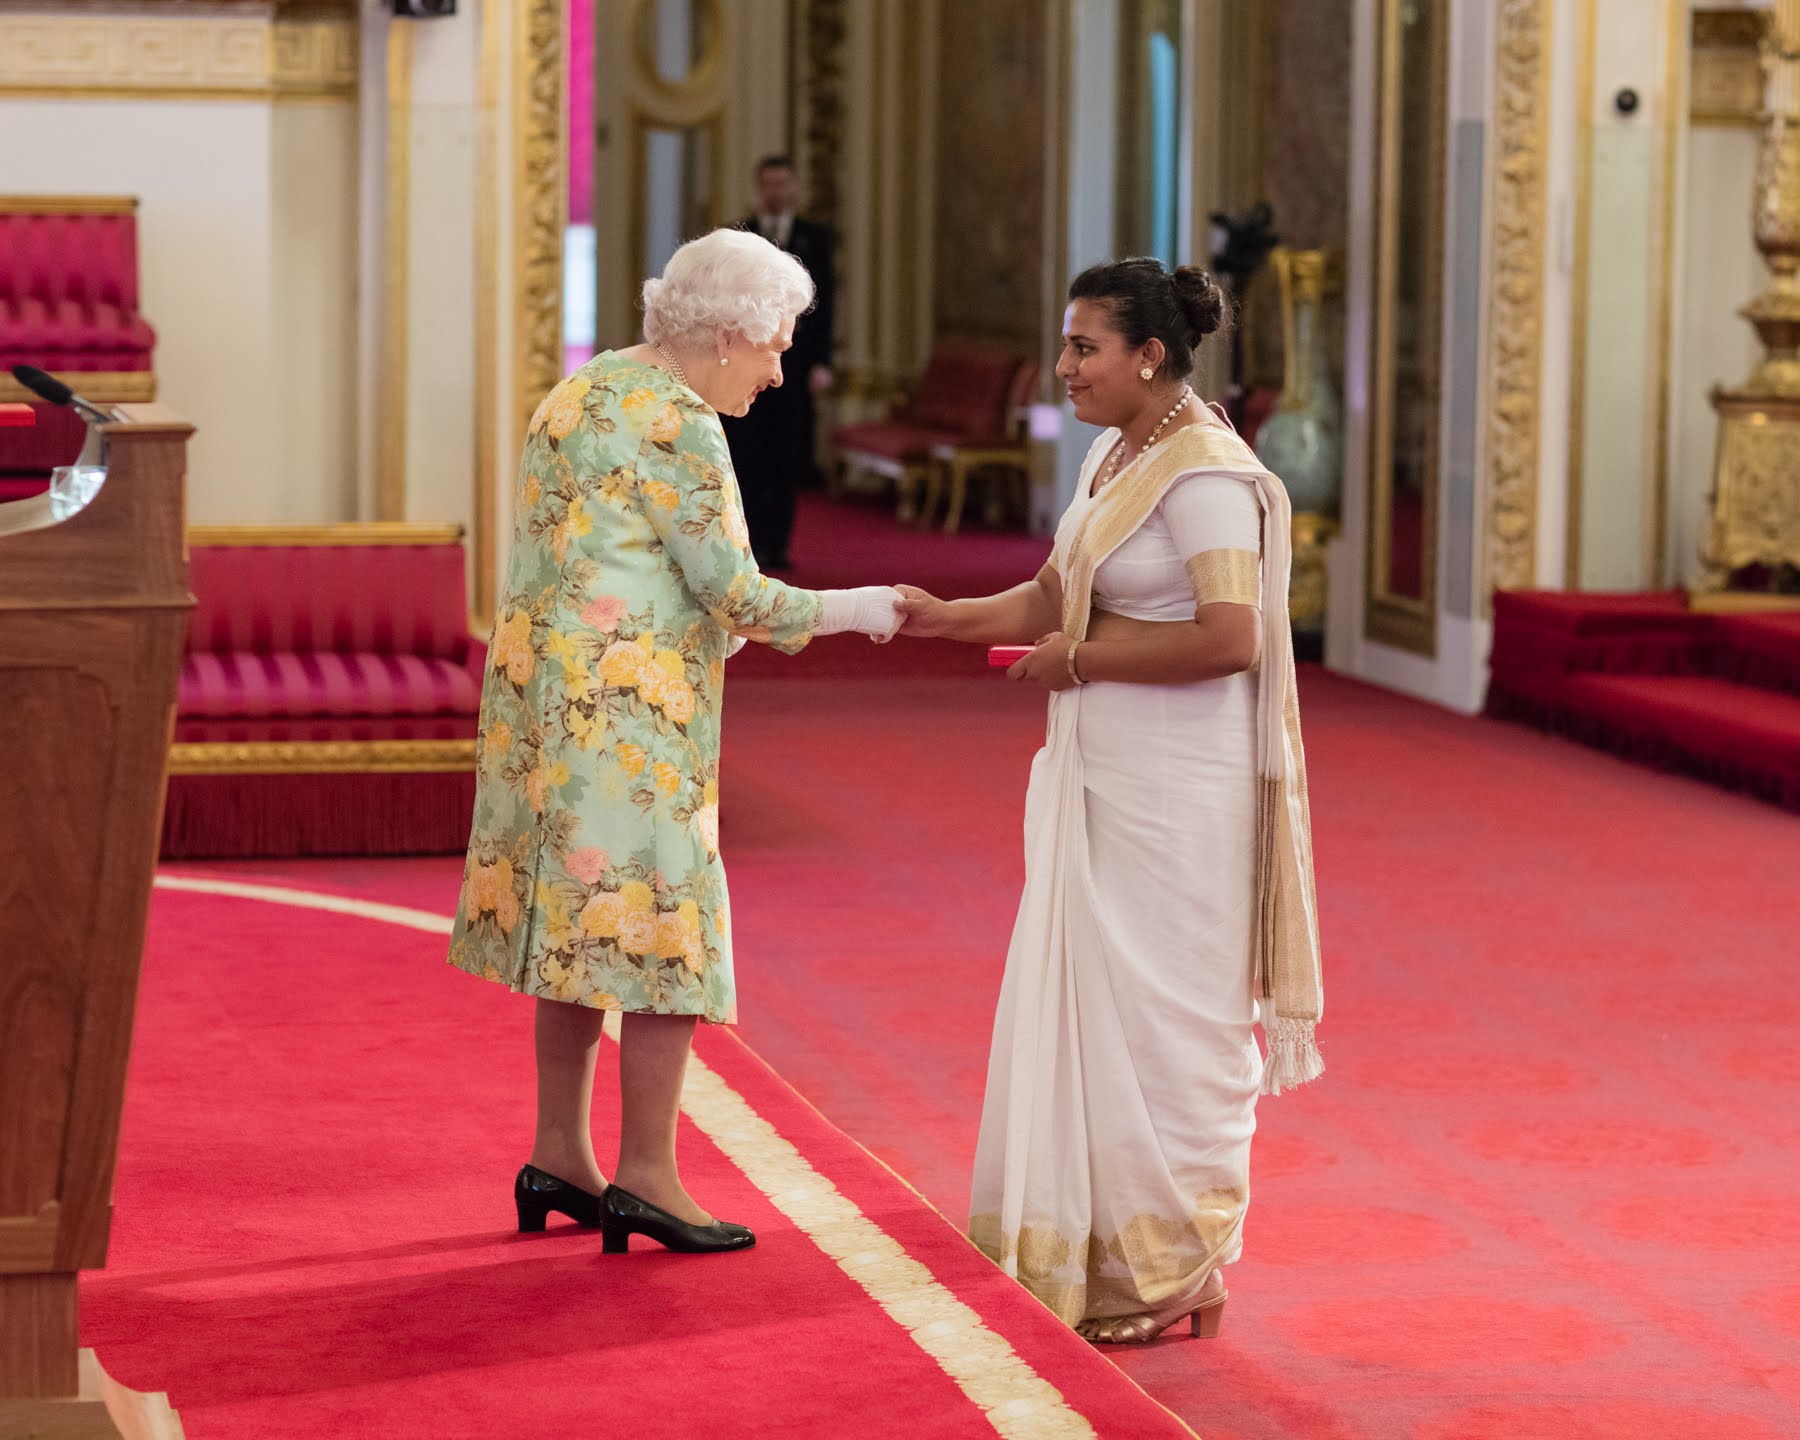 Bhagya Wijayawardane 2018 Queen's Young Leader from Sri Lanka